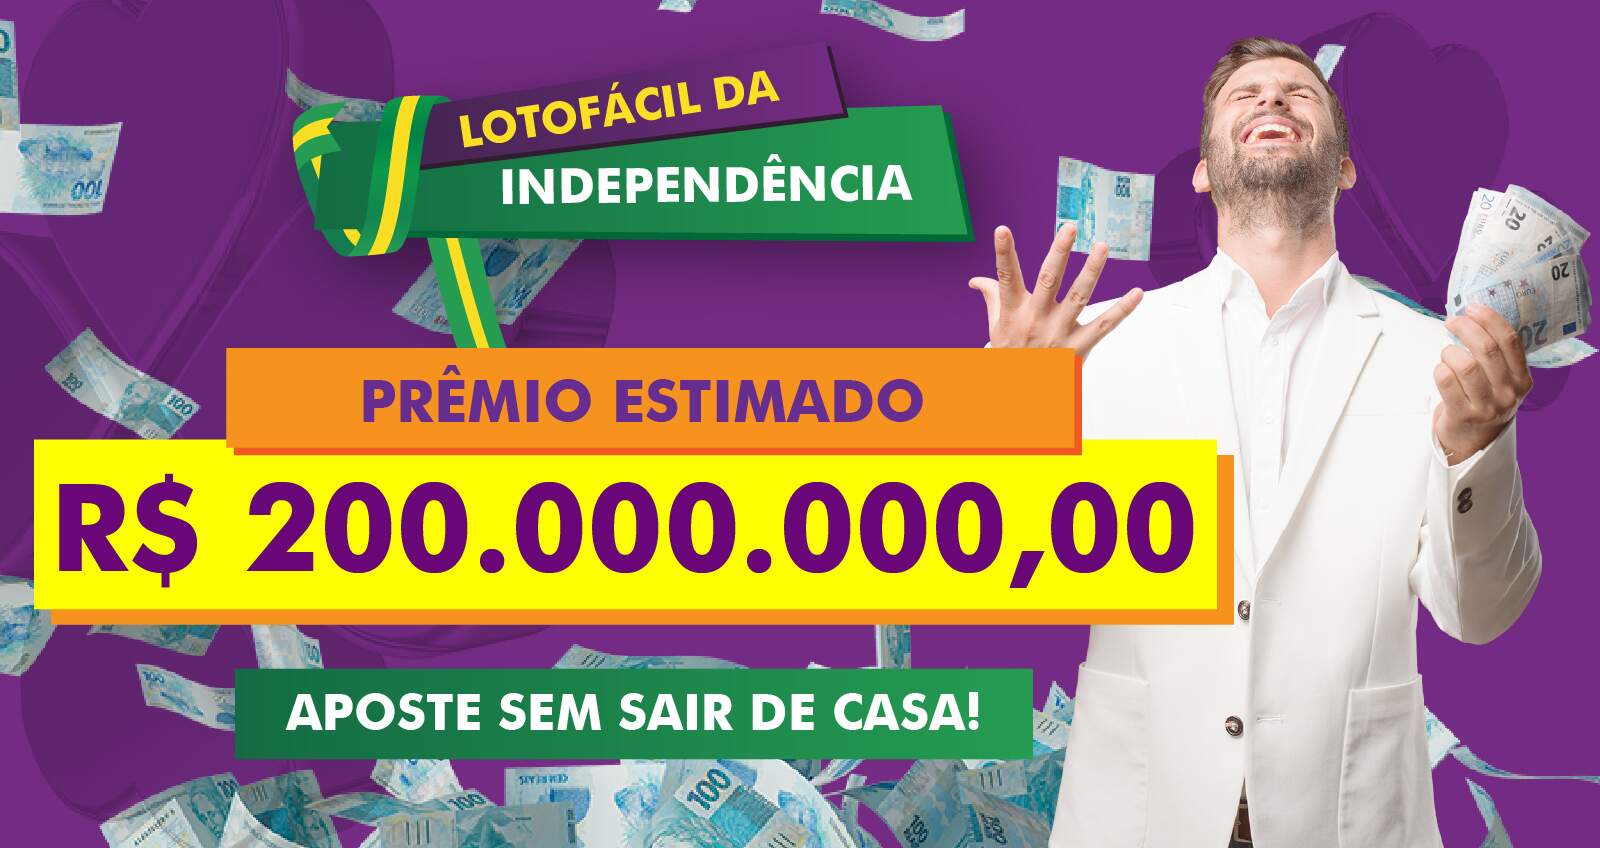 Aumente suas chances de ganhar R$ 200 Milhões na Lotofácil Especial - Canal  de conteúdo Sorte Sorte